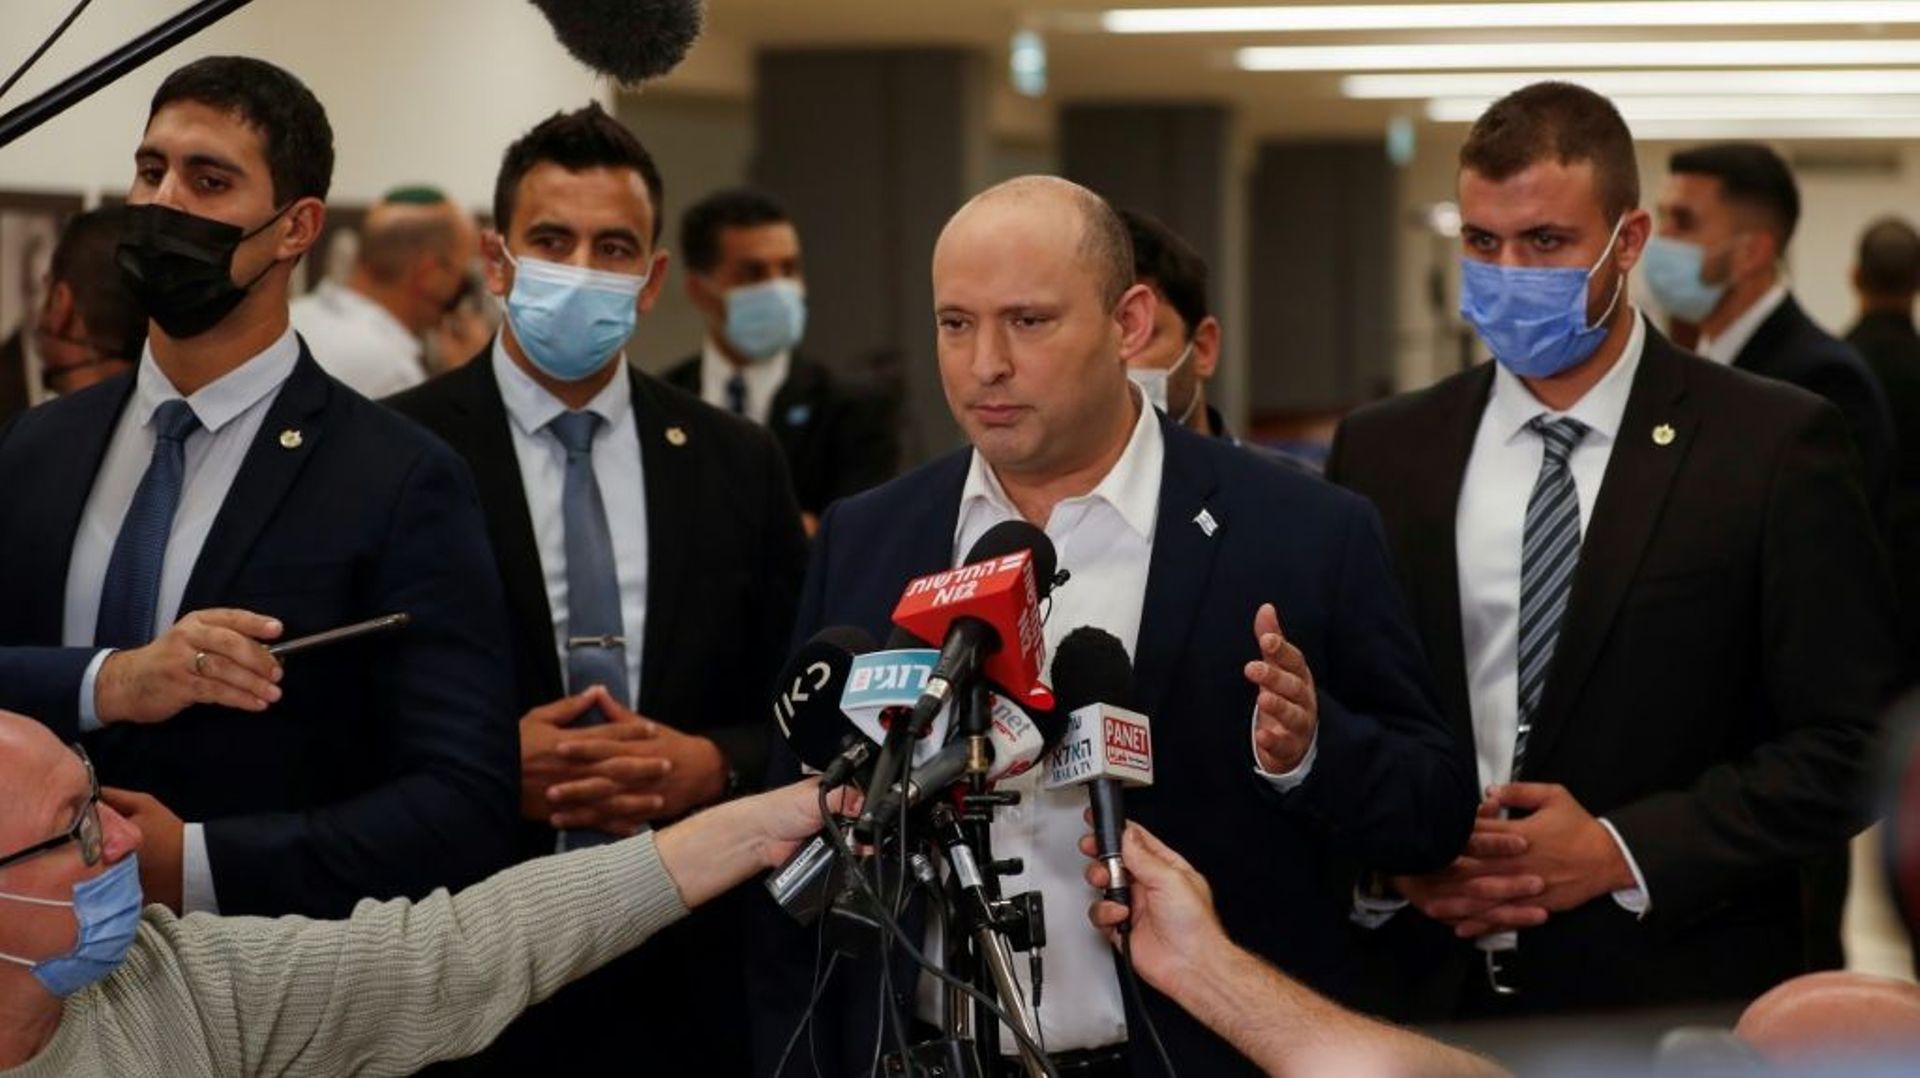 Le Premier ministre israélien Naftali Bennett parle aux journalistes après une séance à la Knesset, le 4 novembre 2021